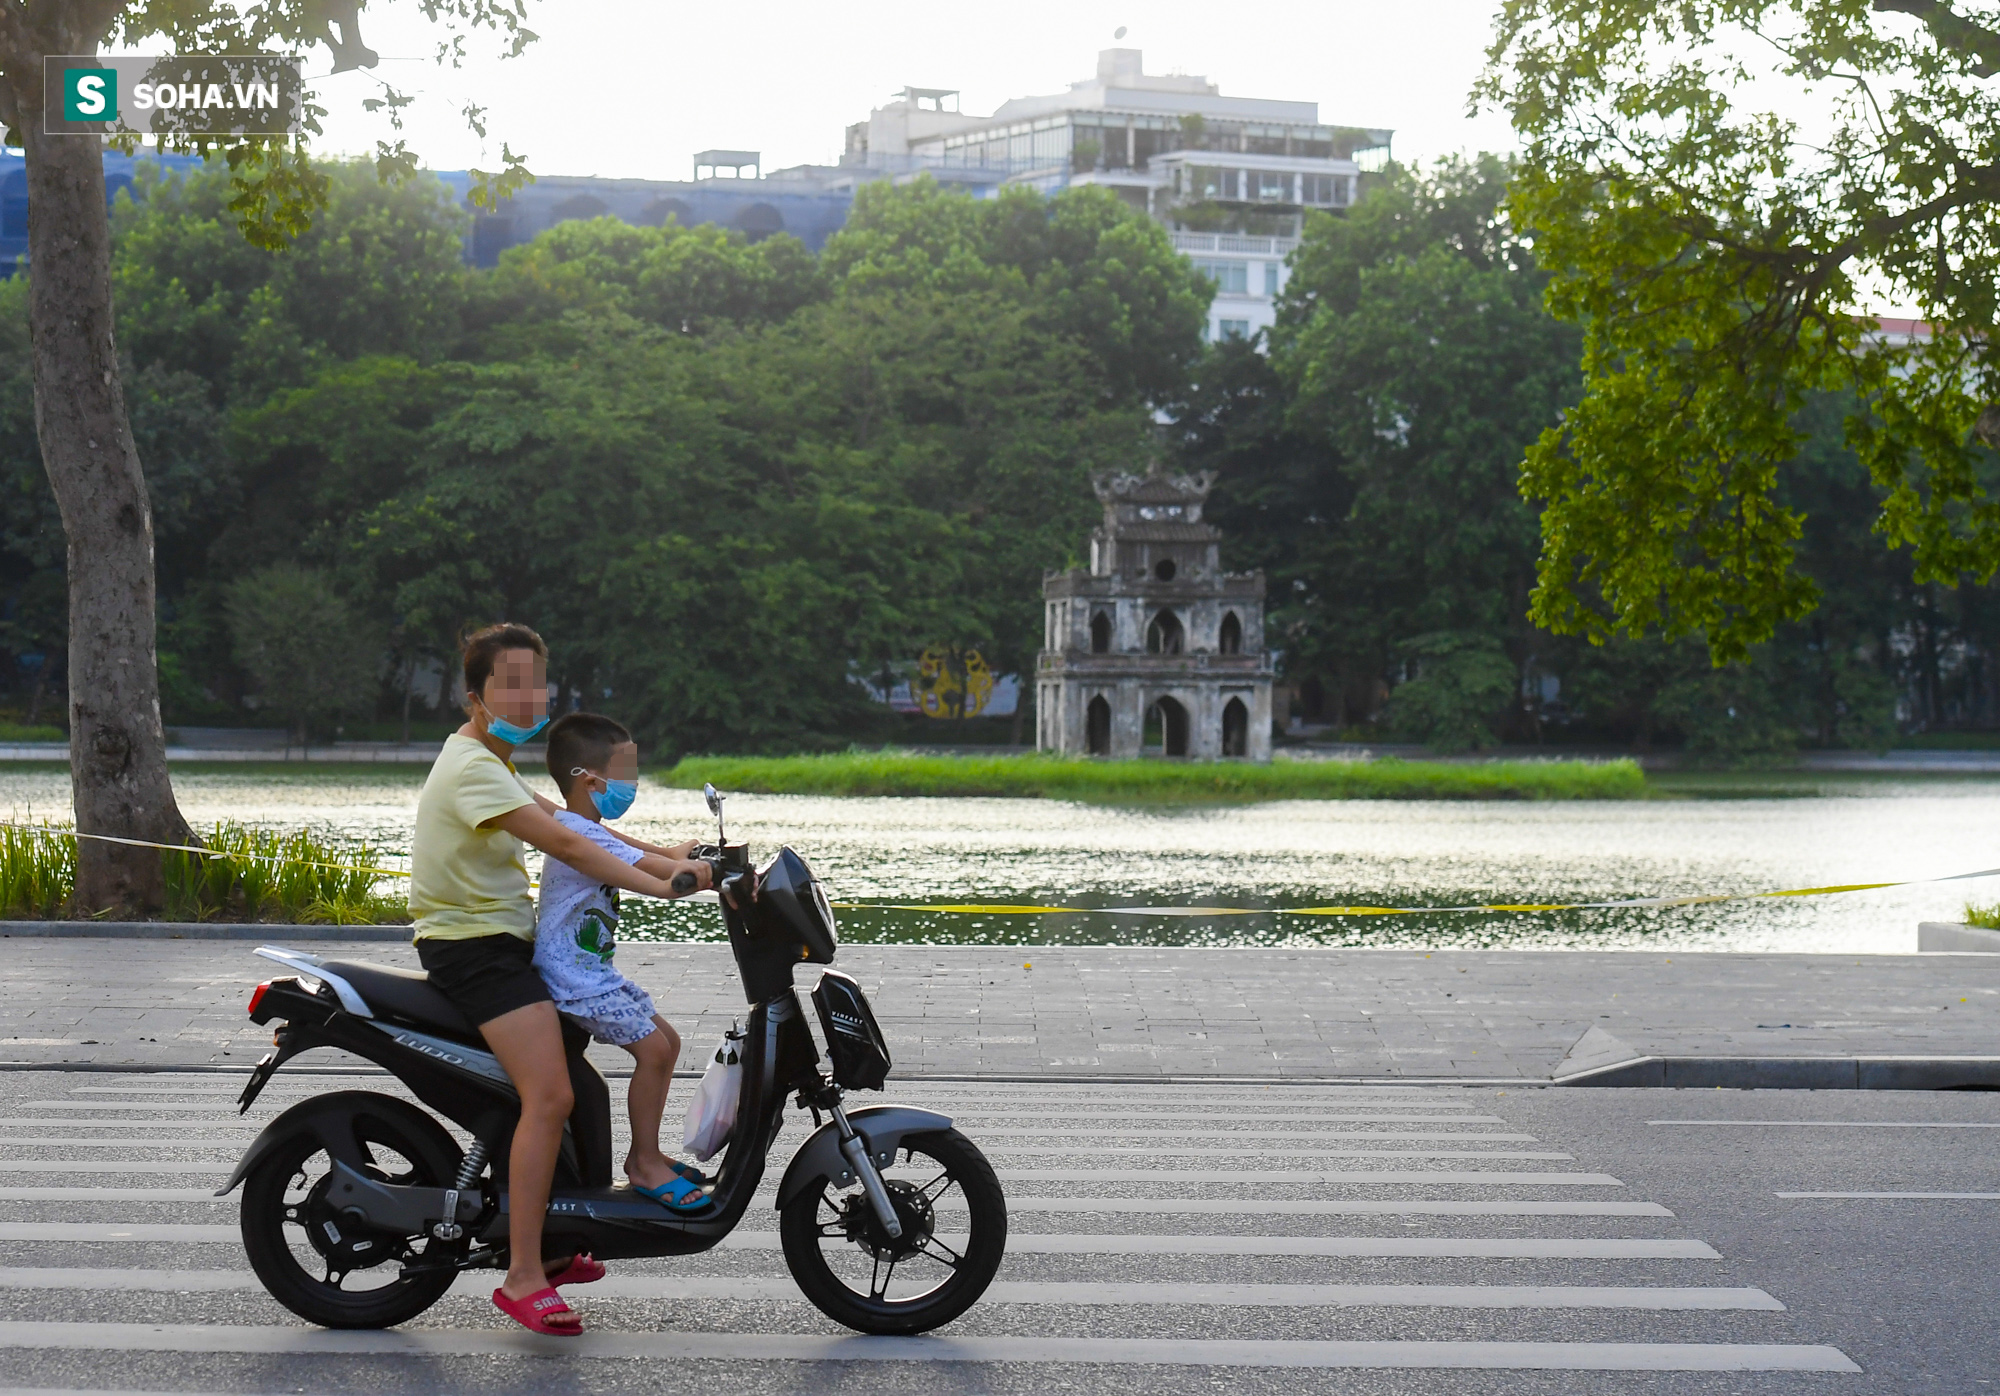 Ra đường mùa dịch: Nhiều người ở Hà Nội nhớ khẩu trang nhưng quên luật giao thông - Ảnh 1.